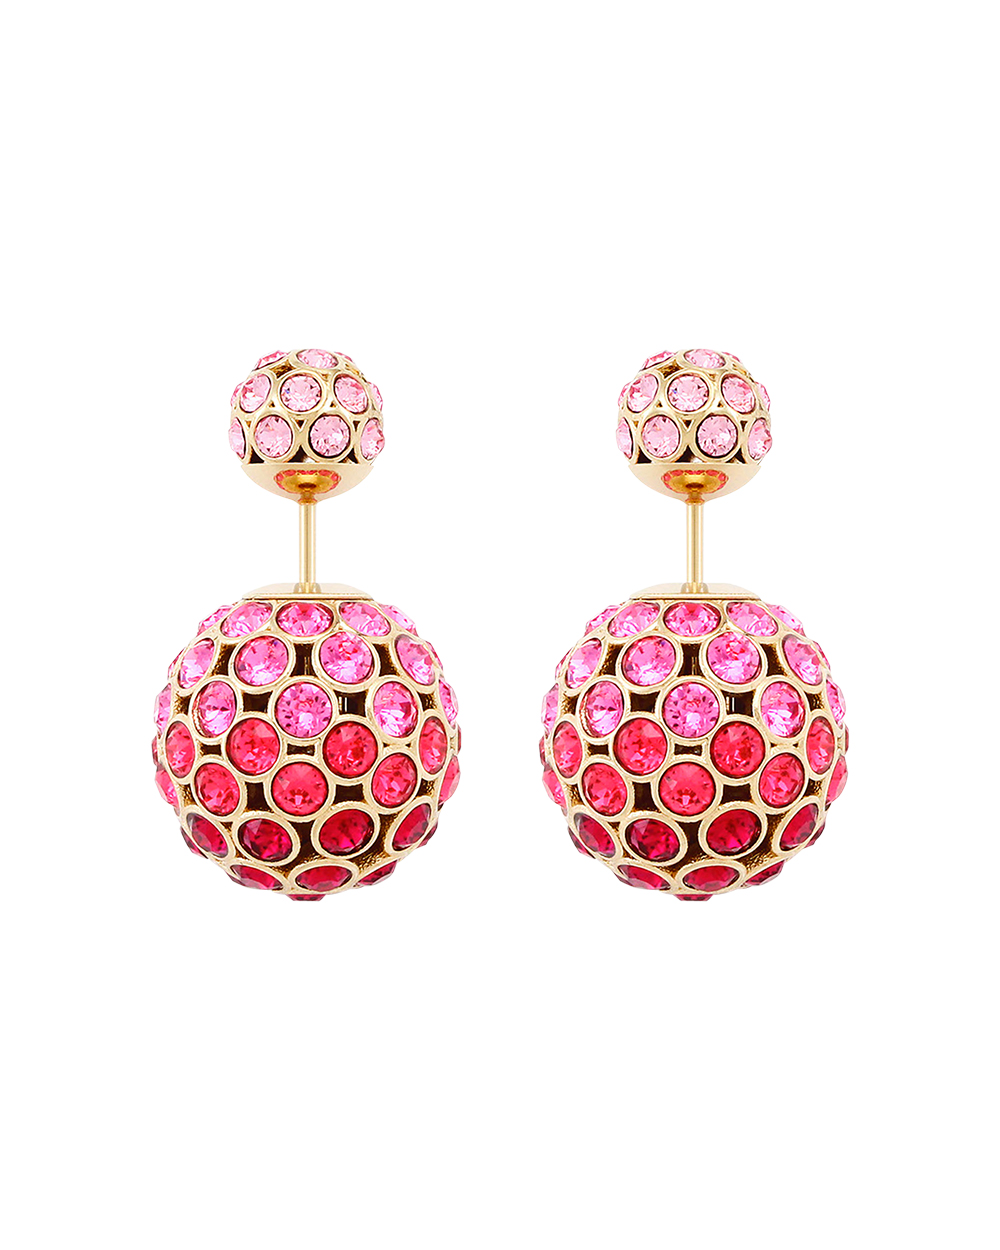 Dior earrings, $1200